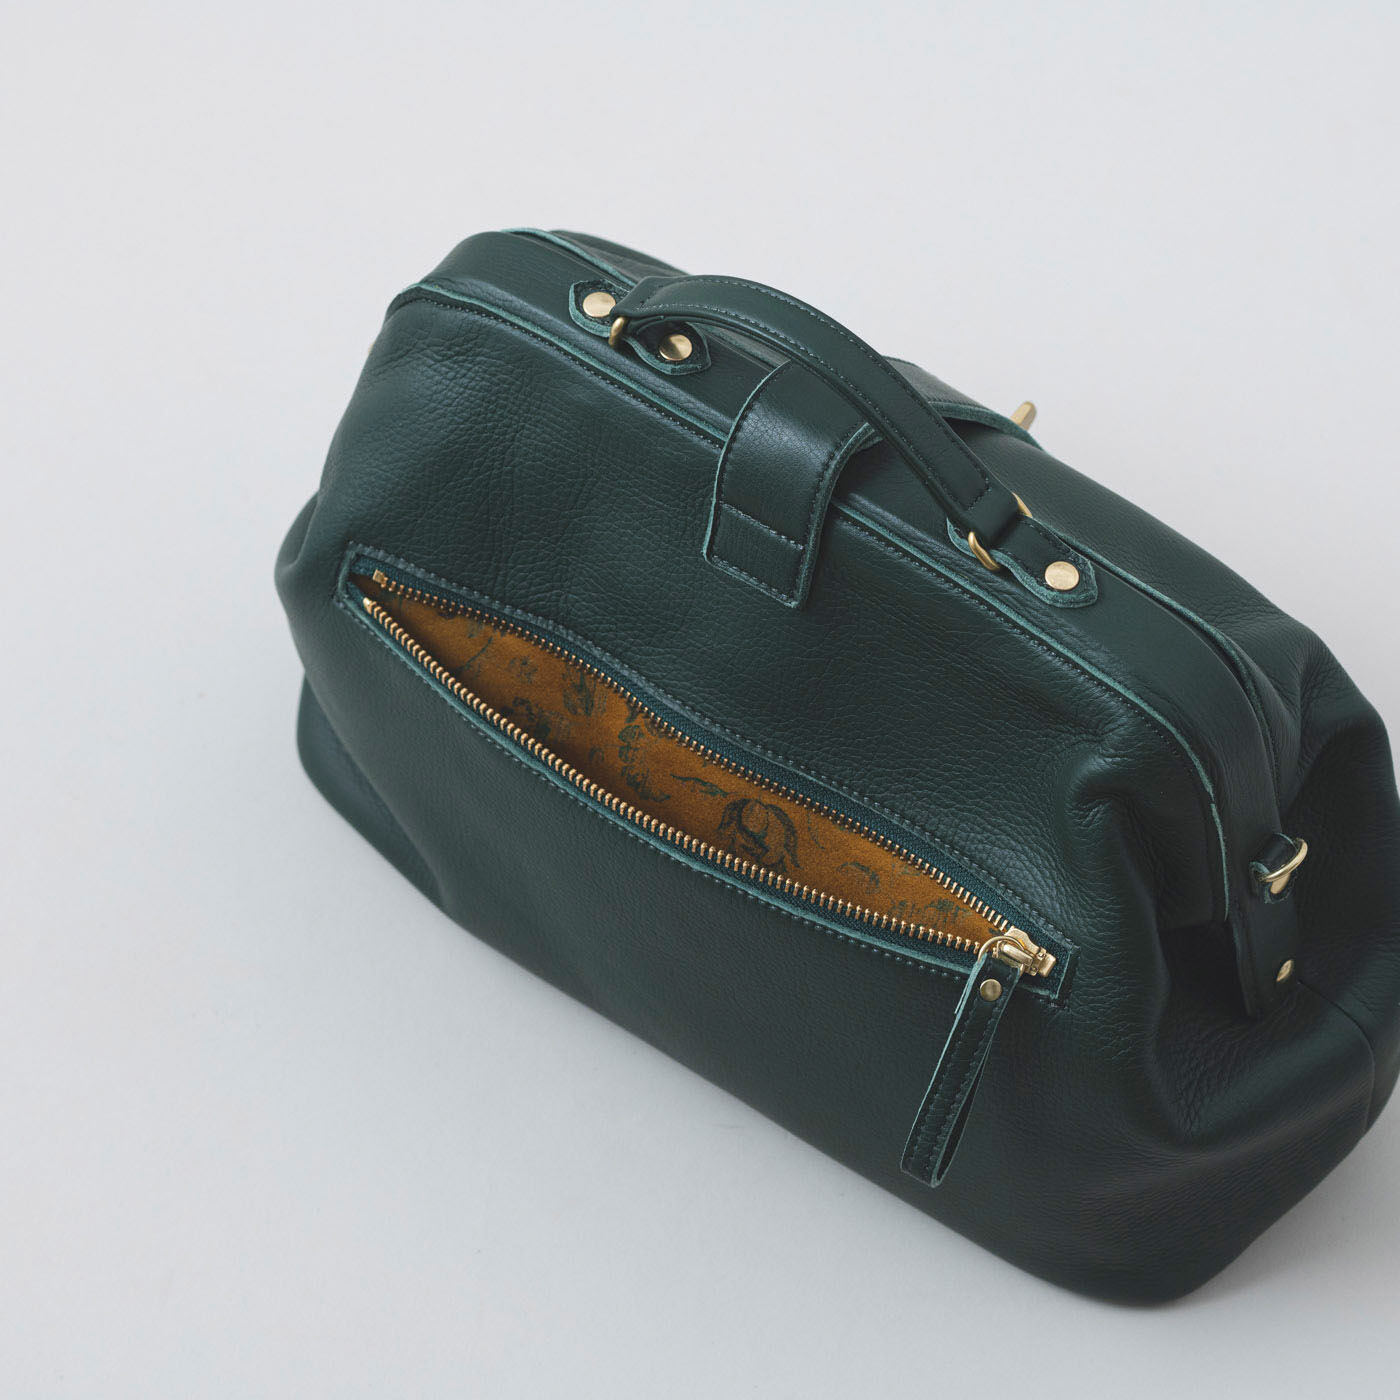 ＆Stories|プランナー山猫が作った 職人本革のミドルダレス〈フォレストグリーン〉|鞄の裏面には、便利なファスナーポケットがひとつ。